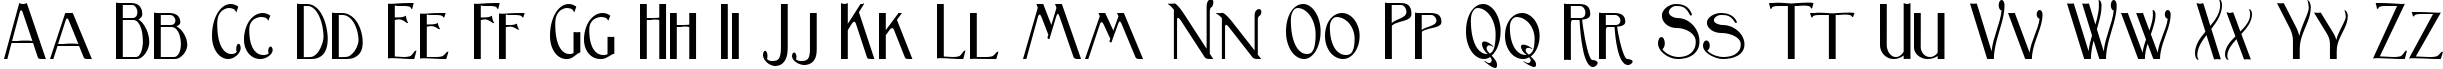 Пример написания английского алфавита шрифтом Birmingham Sans Serif